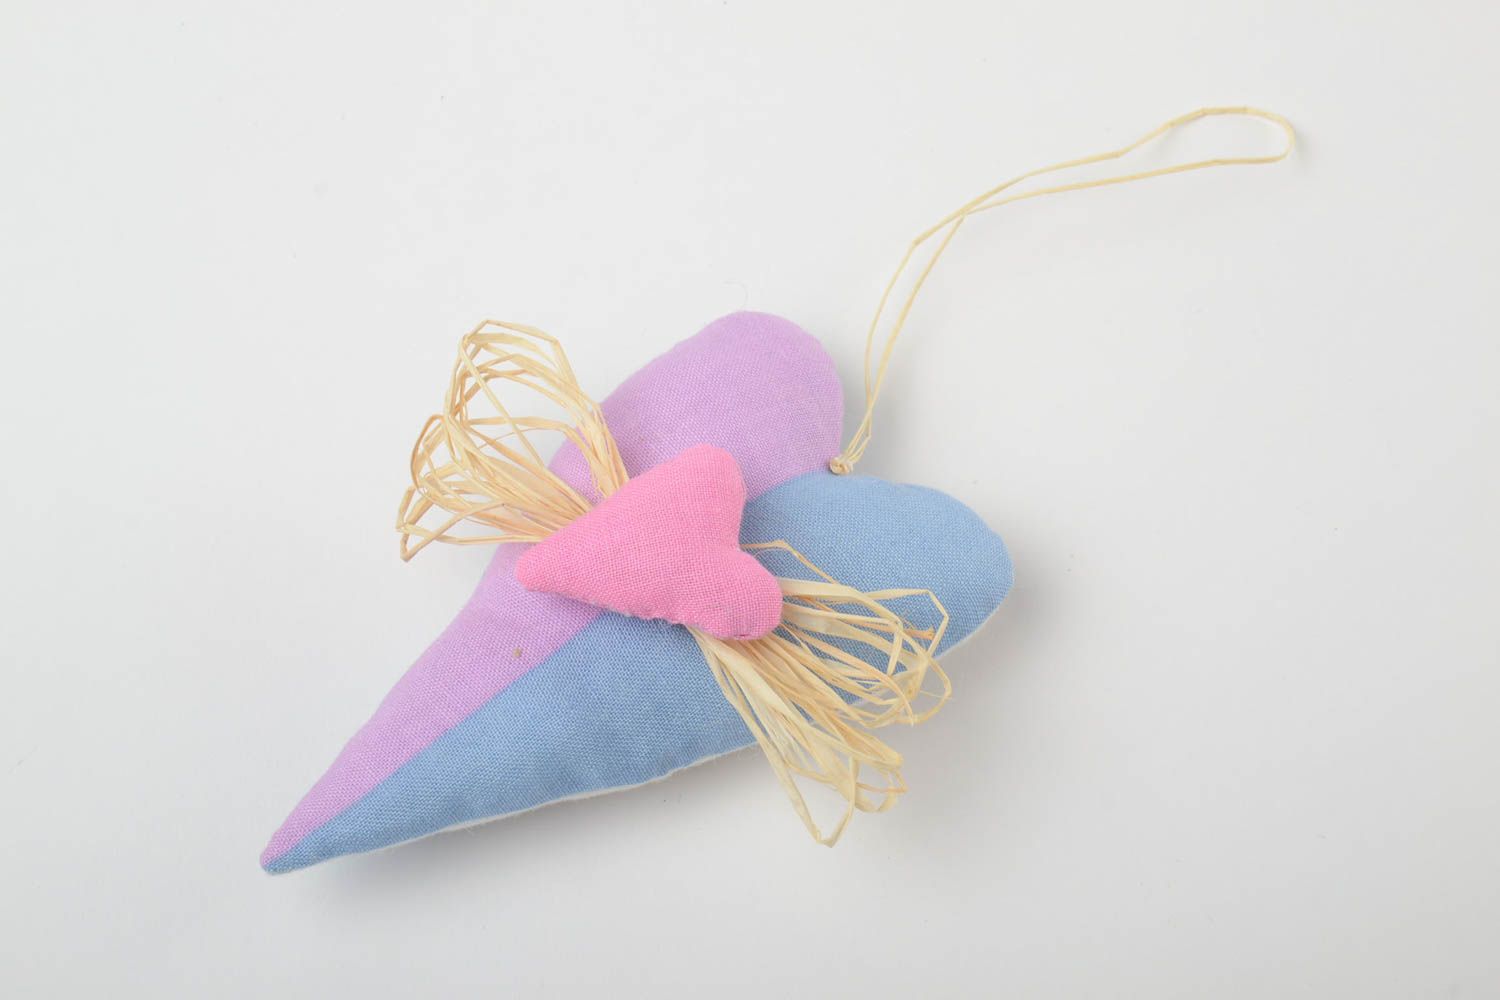 Petite décoration en tissu à suspendre bleu-rose faite main avec paille  photo 2